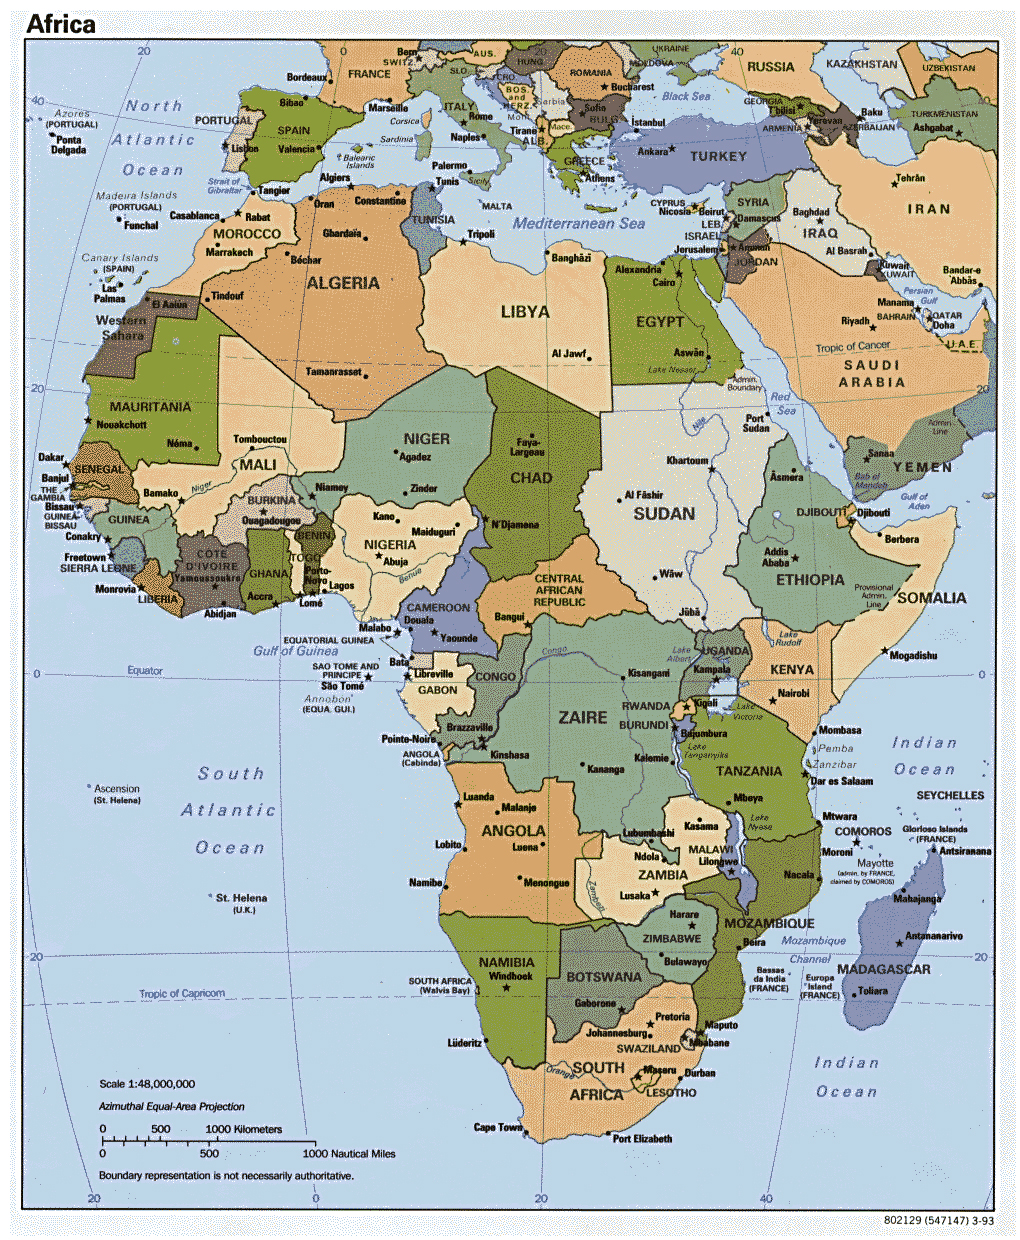 Mapa Político Detallada De África Con Las Principales Ciudades Y Capitales 1993 África 6485